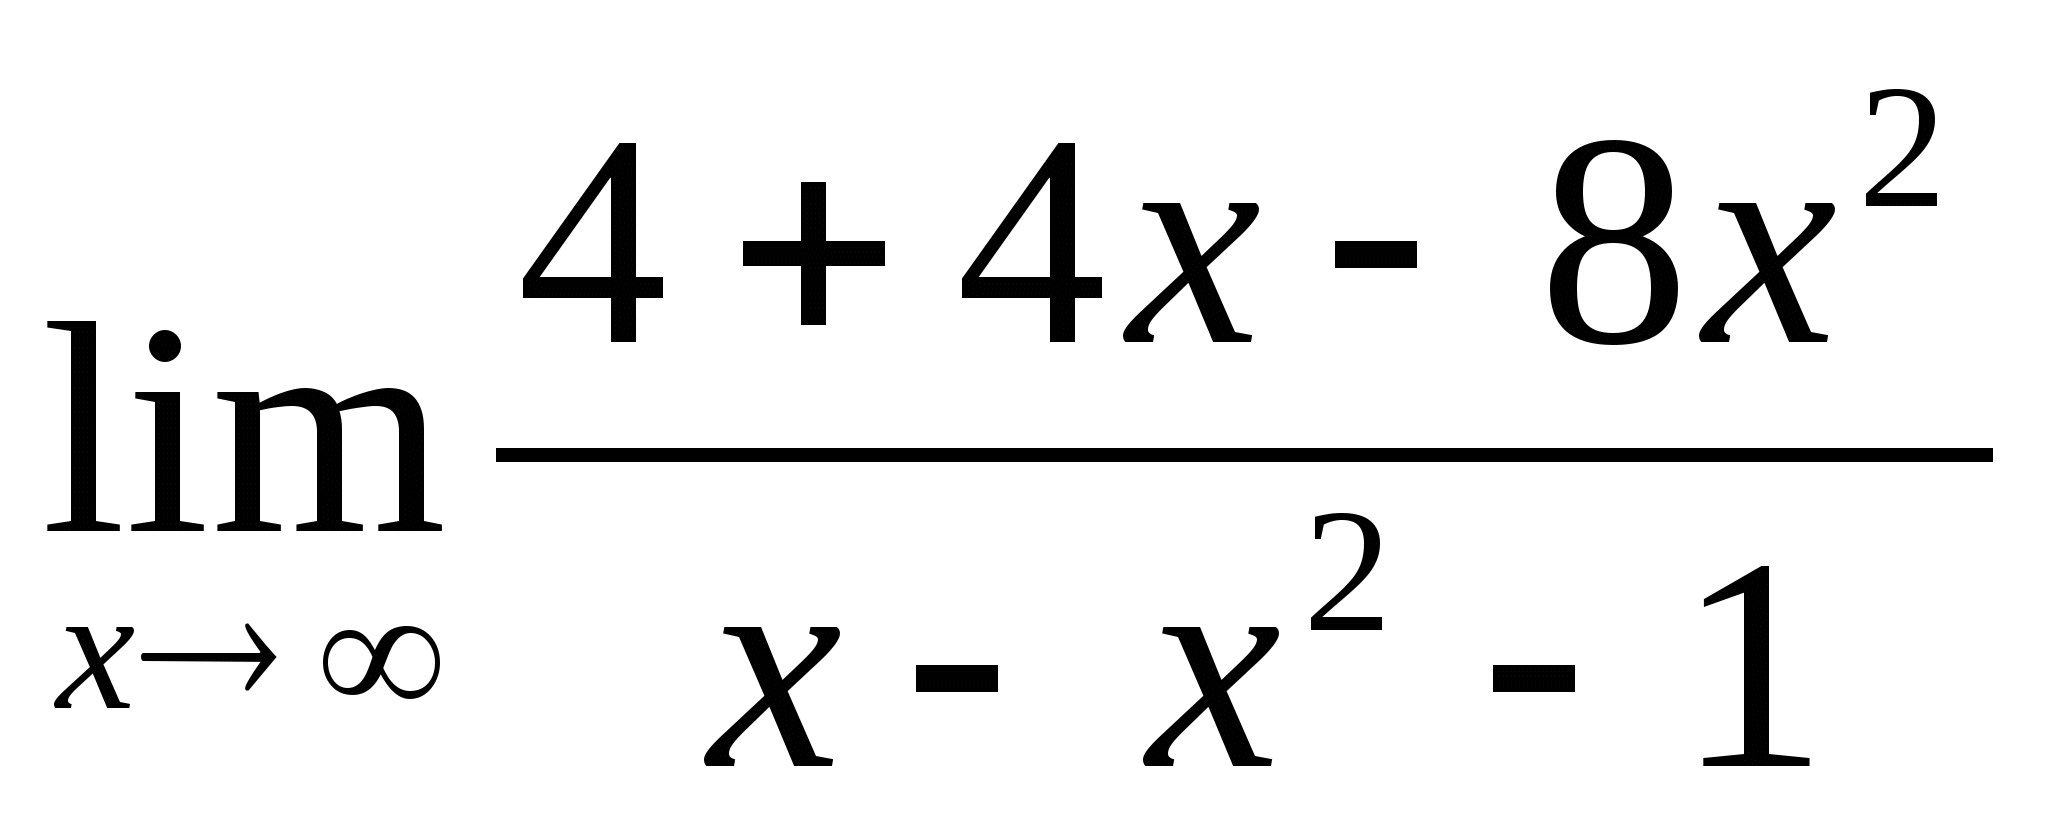 Педагогический измерительный материал эллективного курса Избранные вопросы математики (11 класс)